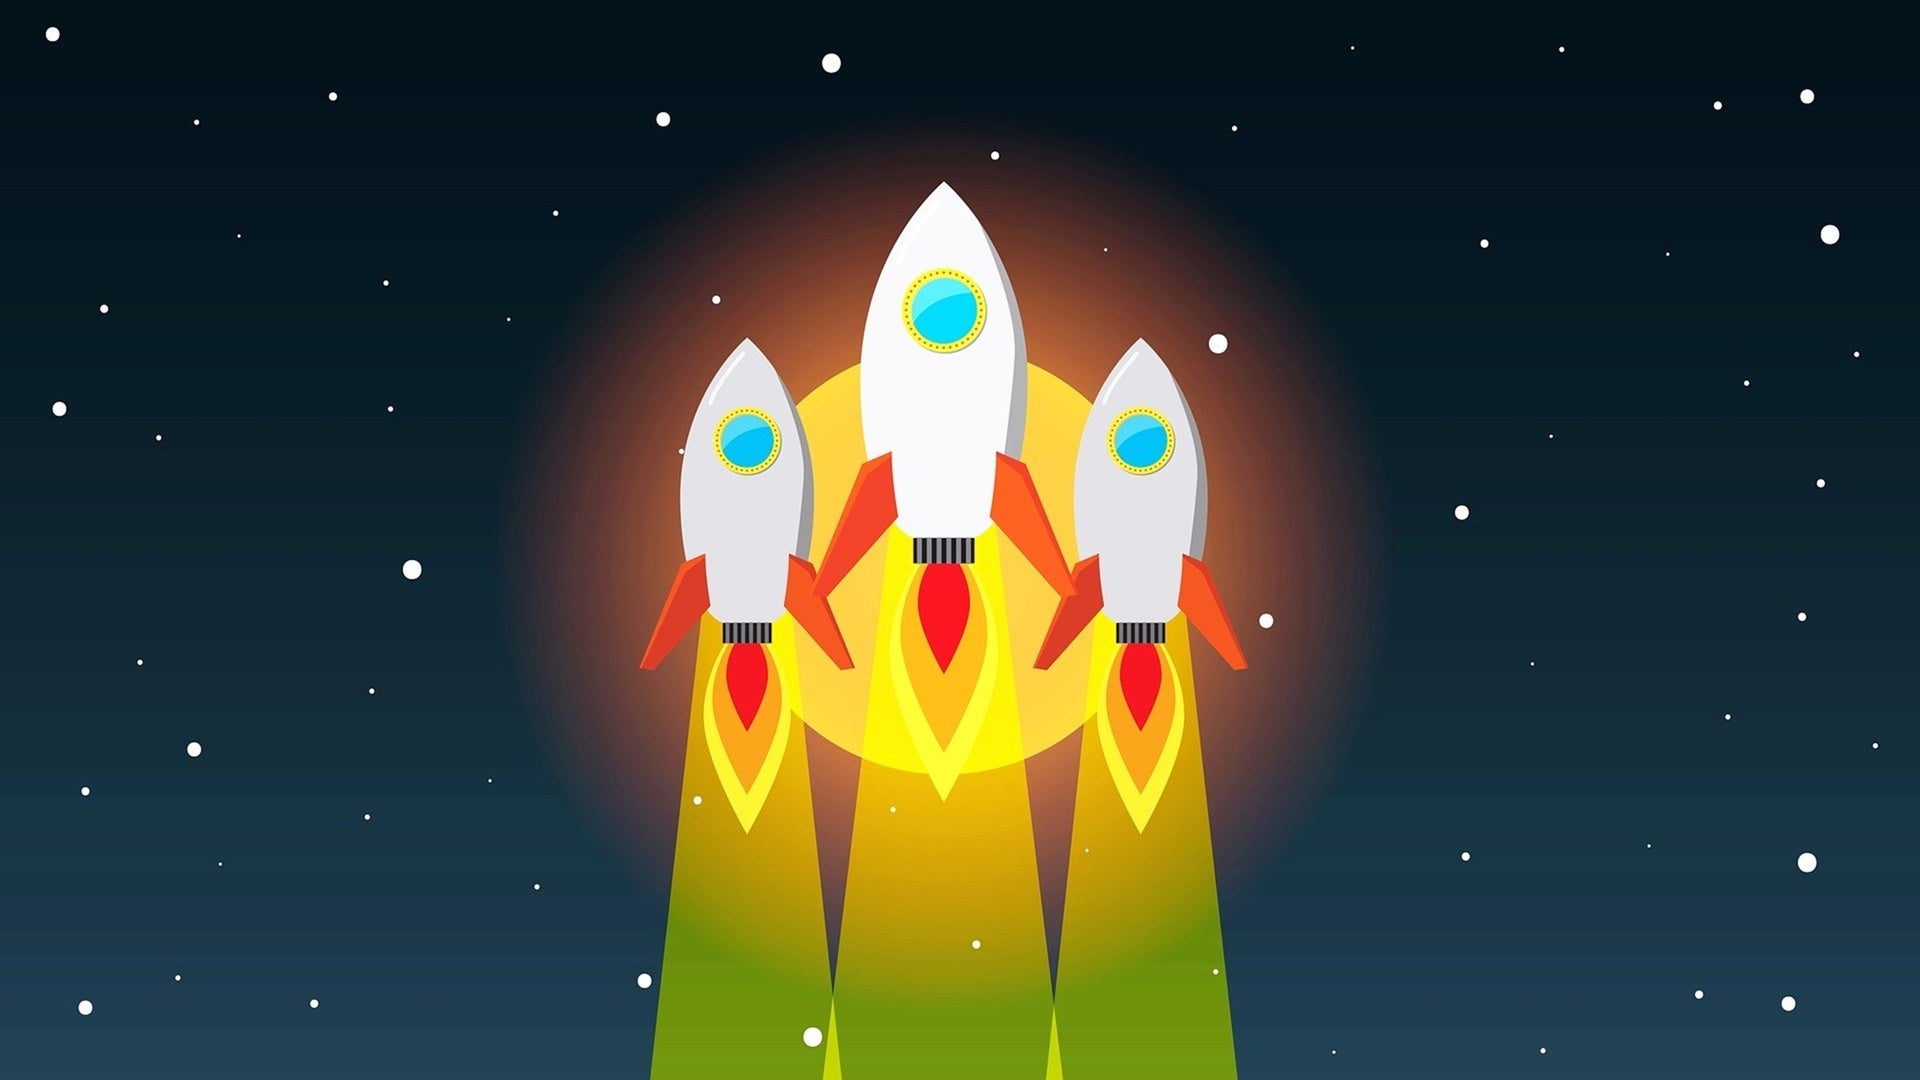 startups / rockets